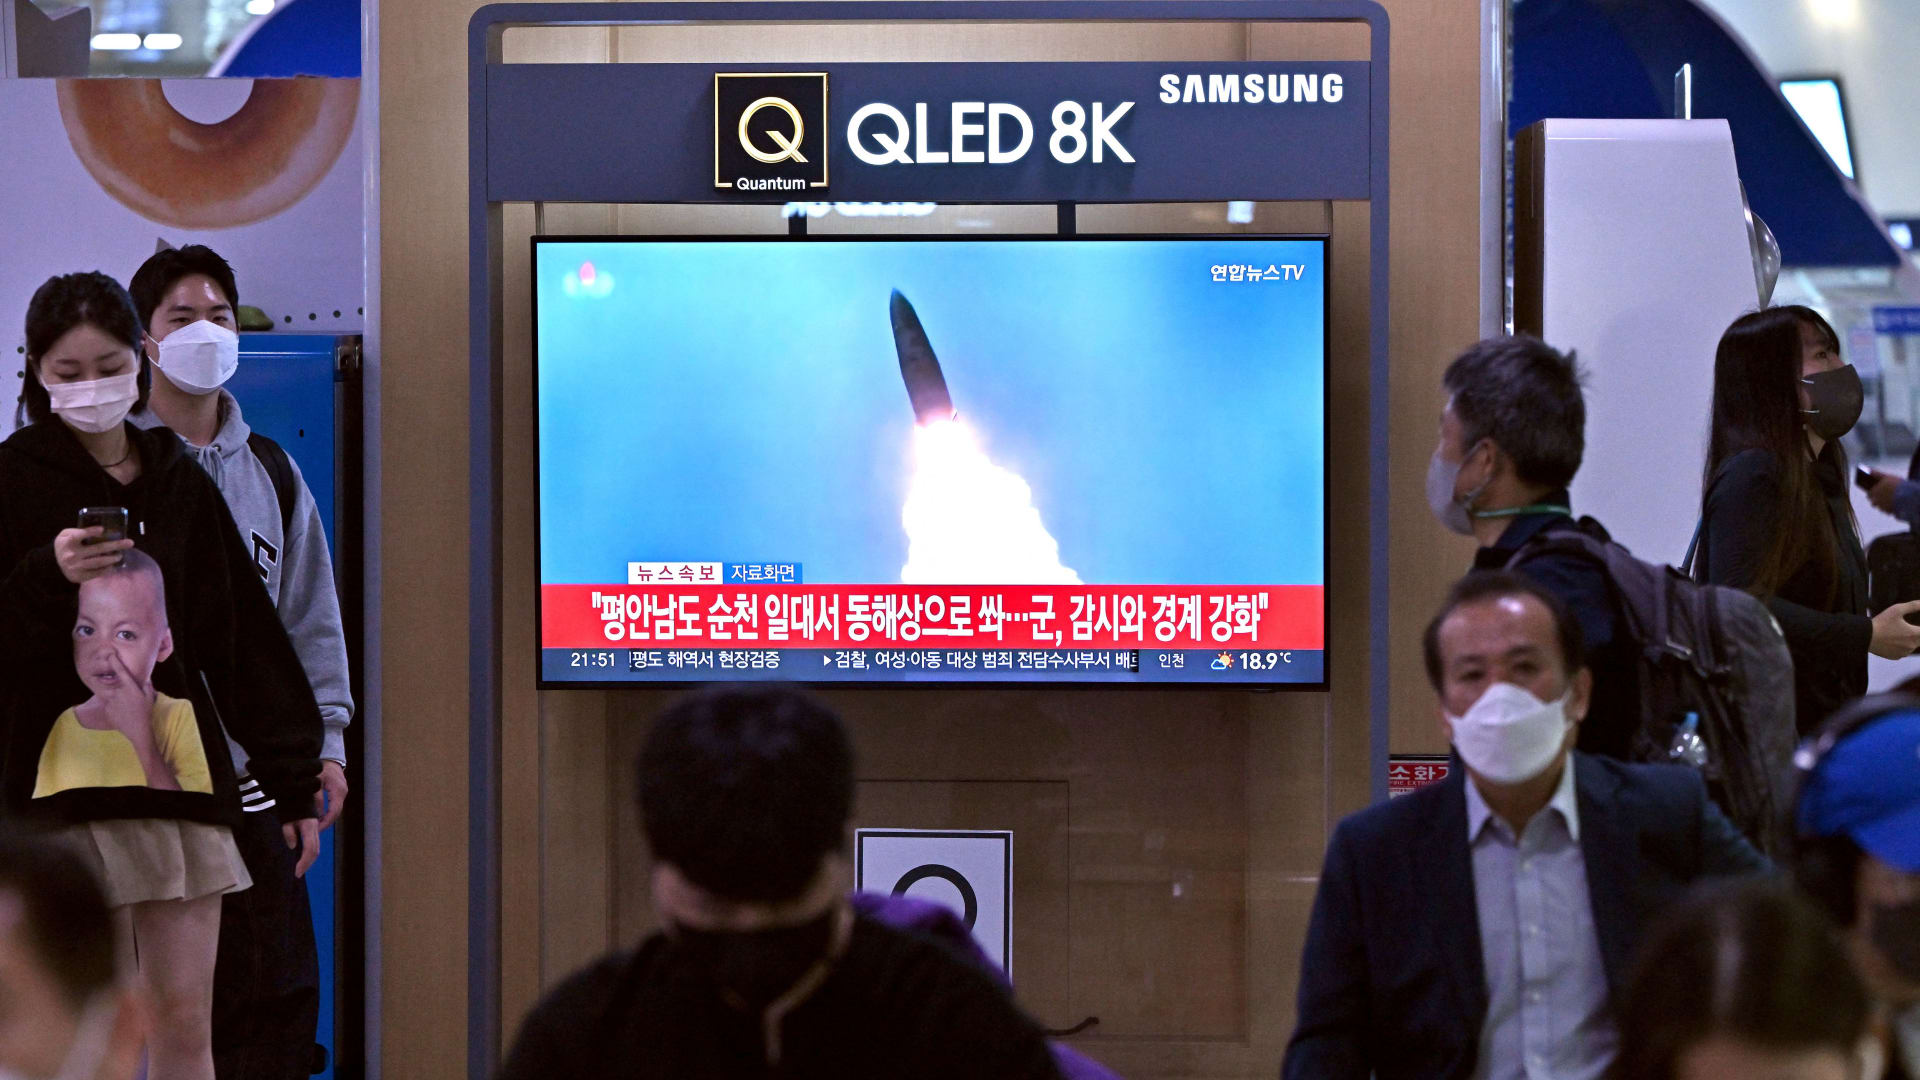 صورة أرشيفية لمحطة تلفزيونية بكوريا الجنوبية تعرض جانب من إطلاق صاروخ من كوريا الشمالية